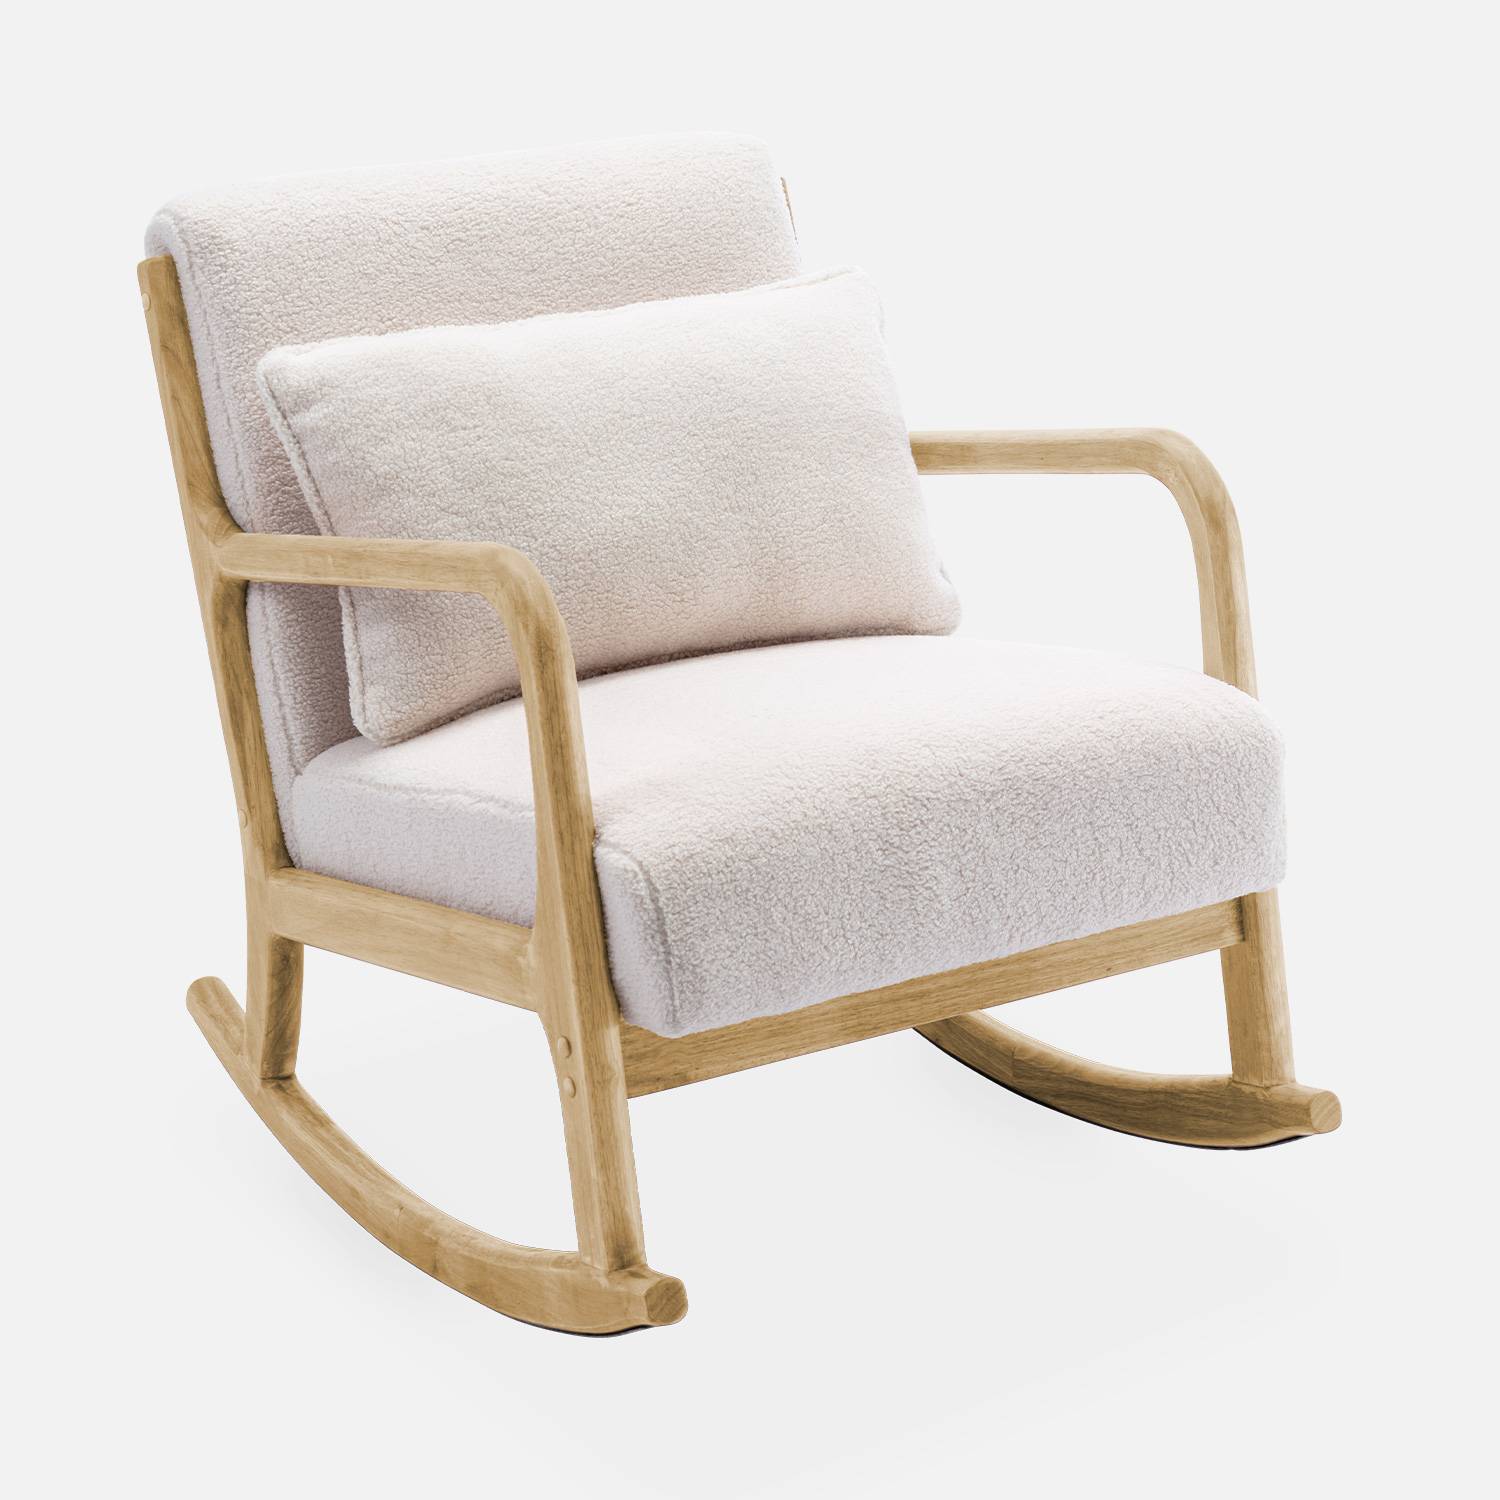 Cadeira de baloiço de design em madeira e tecido, caracóis brancos, 1 lugar, cadeira de baloiço escandinava Photo4